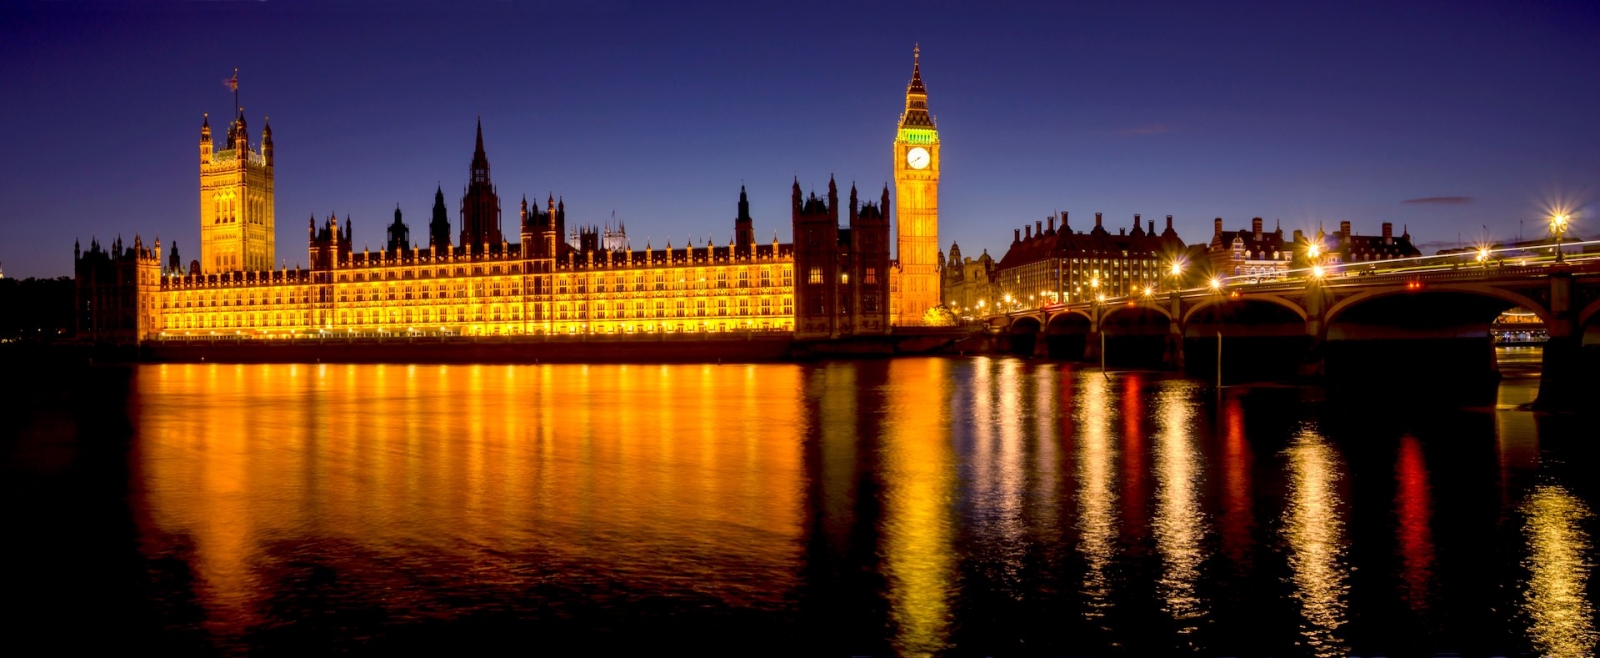 Die Houses of Parliament in London, Großbritannien